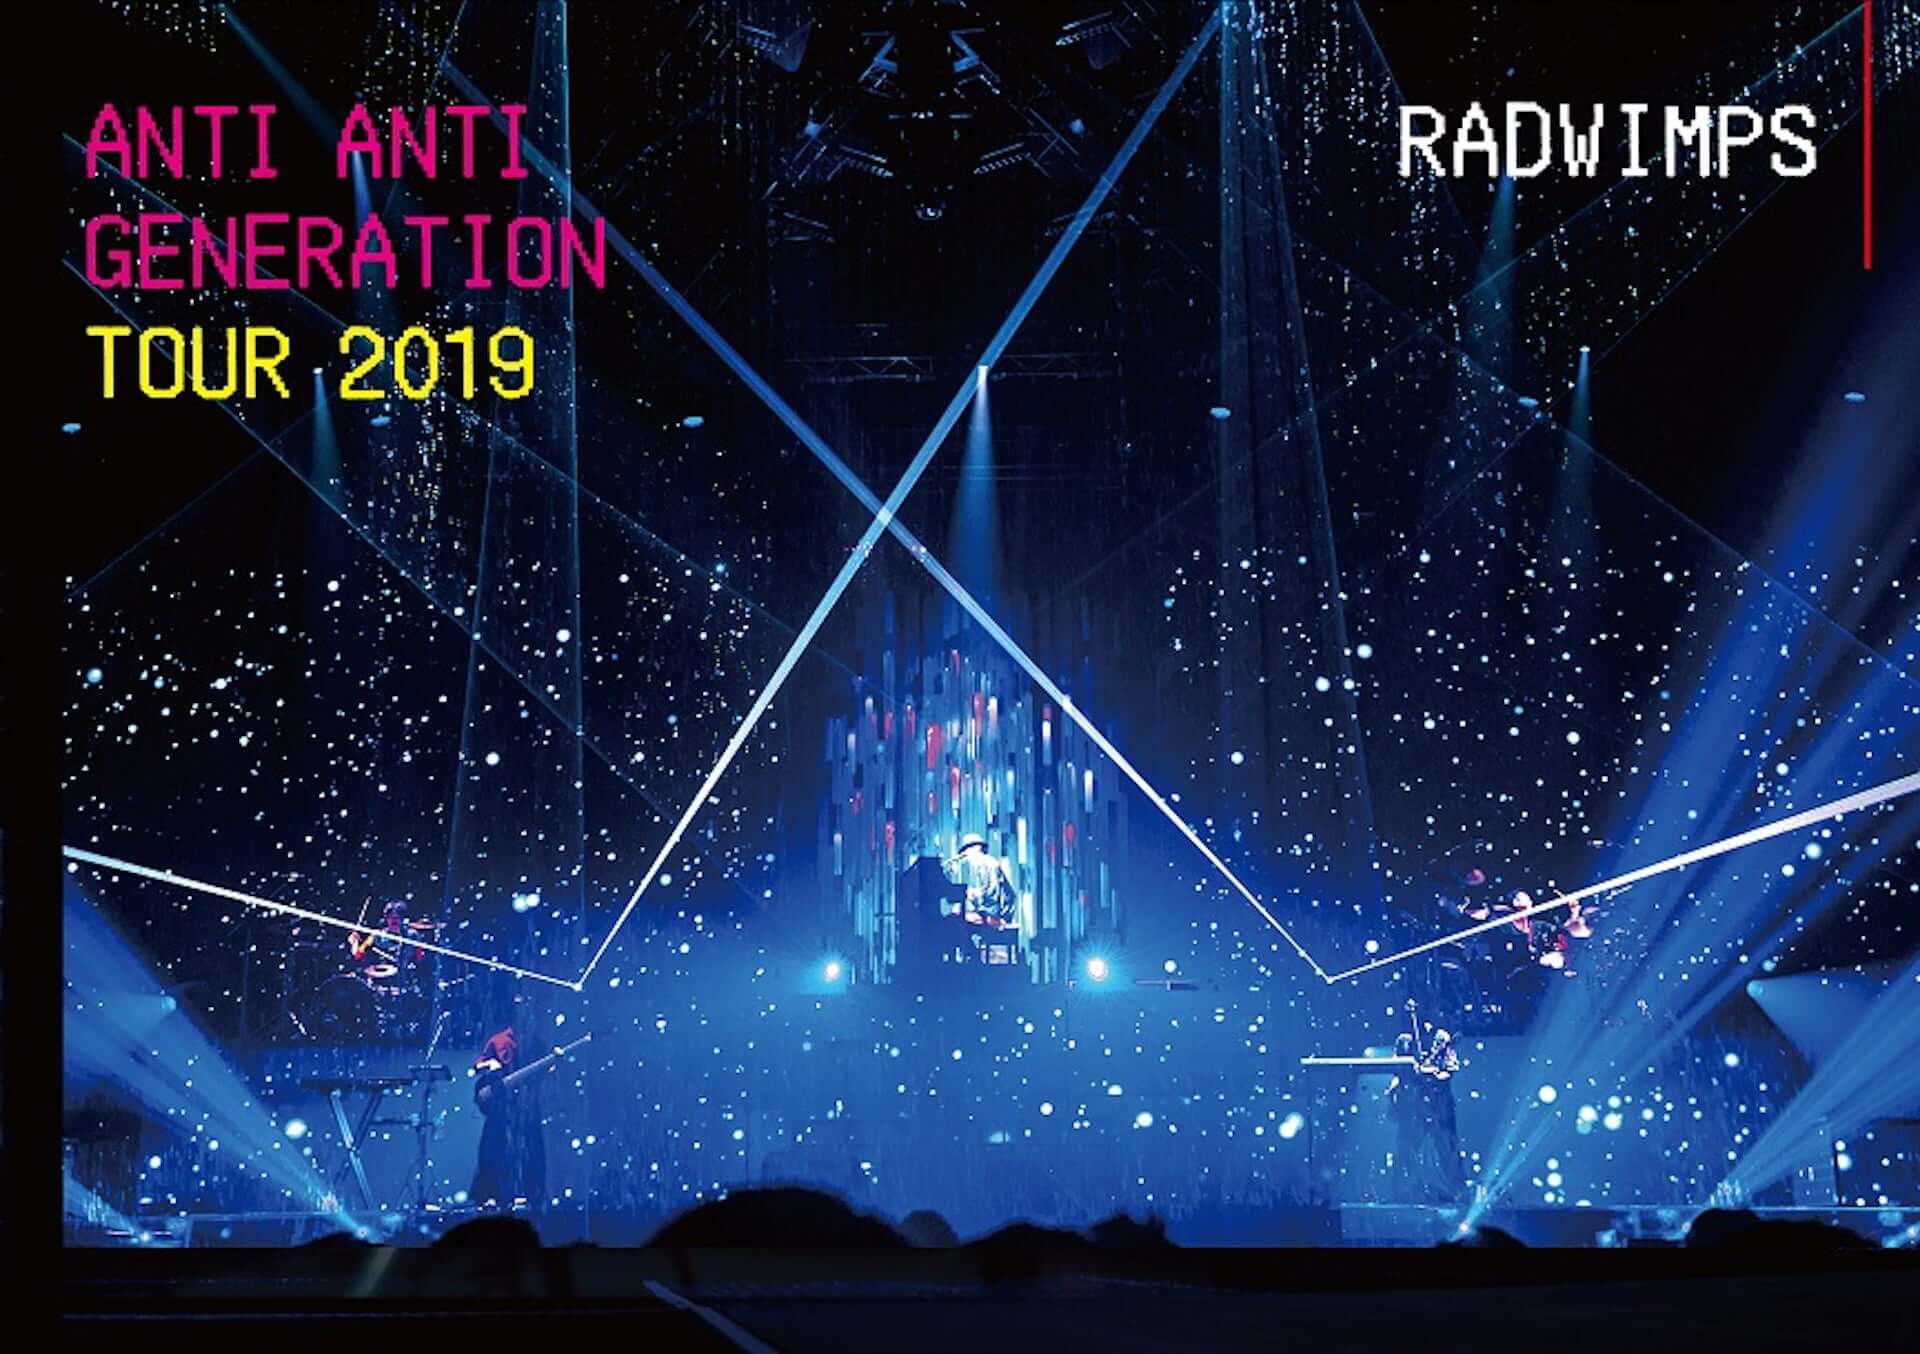 Radwimps Anti Anti Generation Tour 19 の多幸感あふれるジャケットビジュアル トレーラーがついに解禁 Qetic